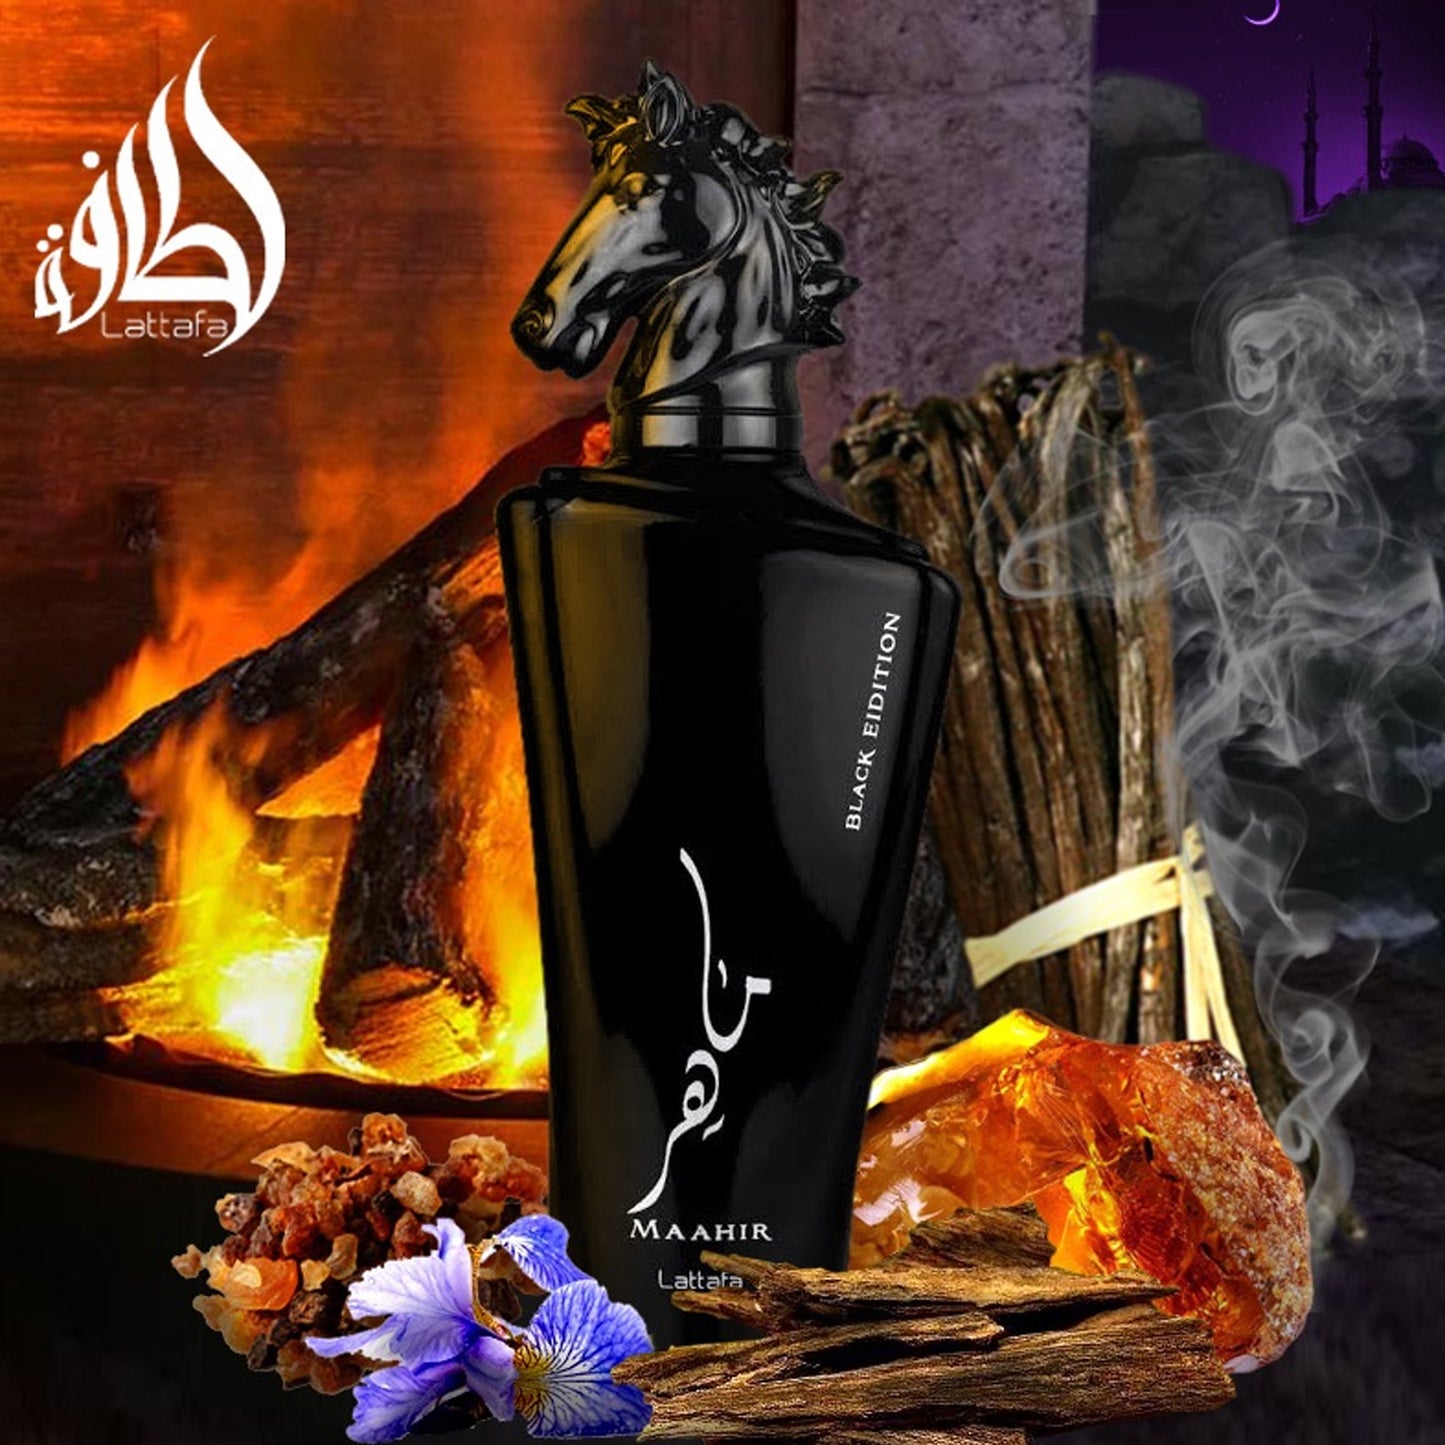 Maahir BLACK EDITION 100ml Eau de Parfum Lattafa - Spicy, Sweet, Amber & Woody